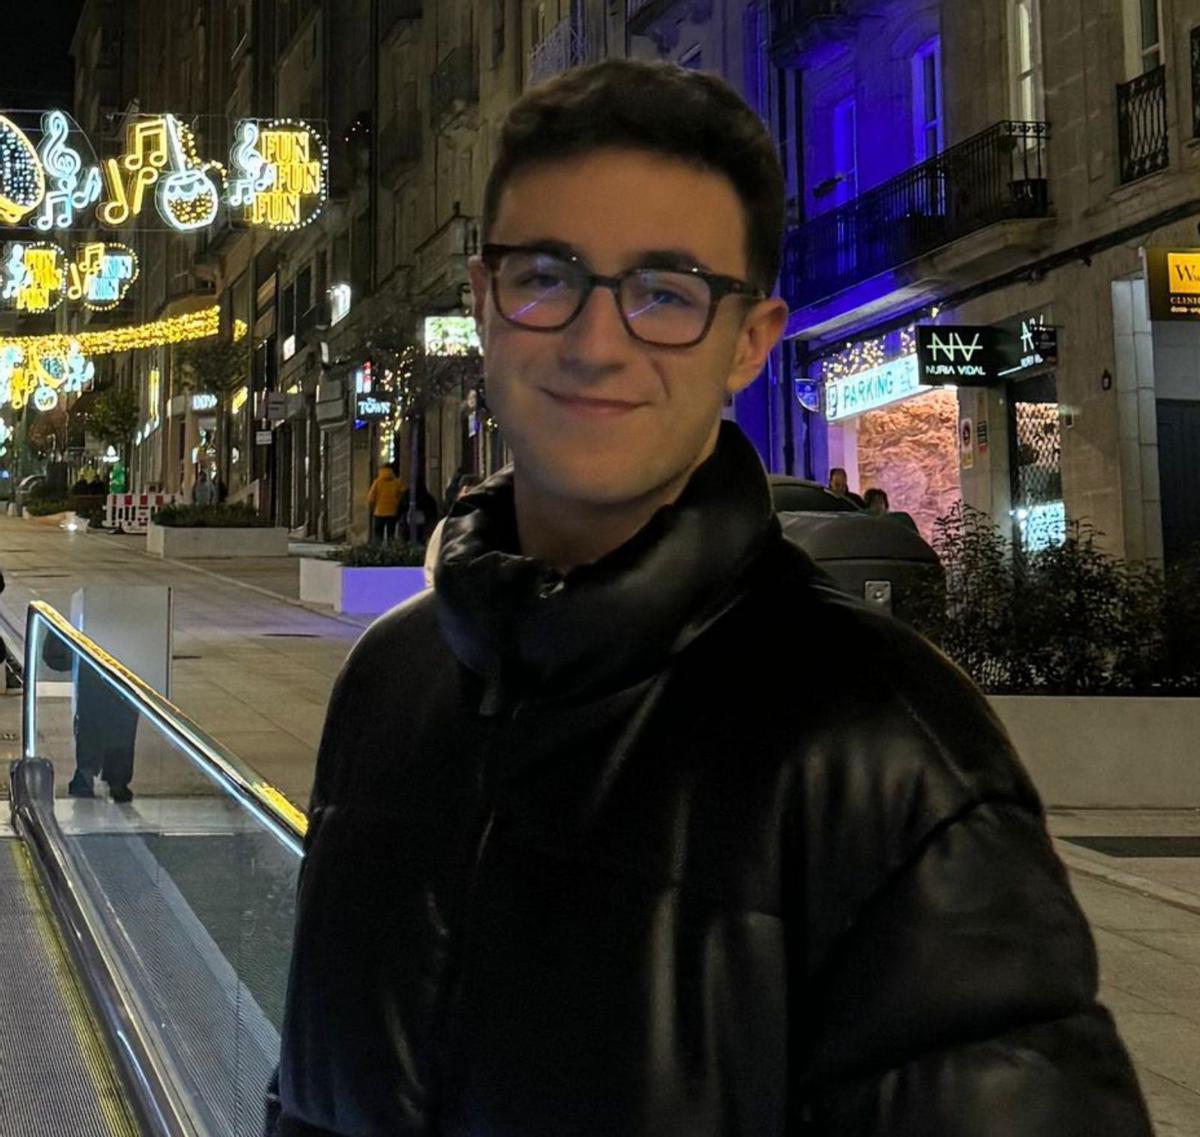 Javier Alén tiene 19 años 
y milita en un partido político.